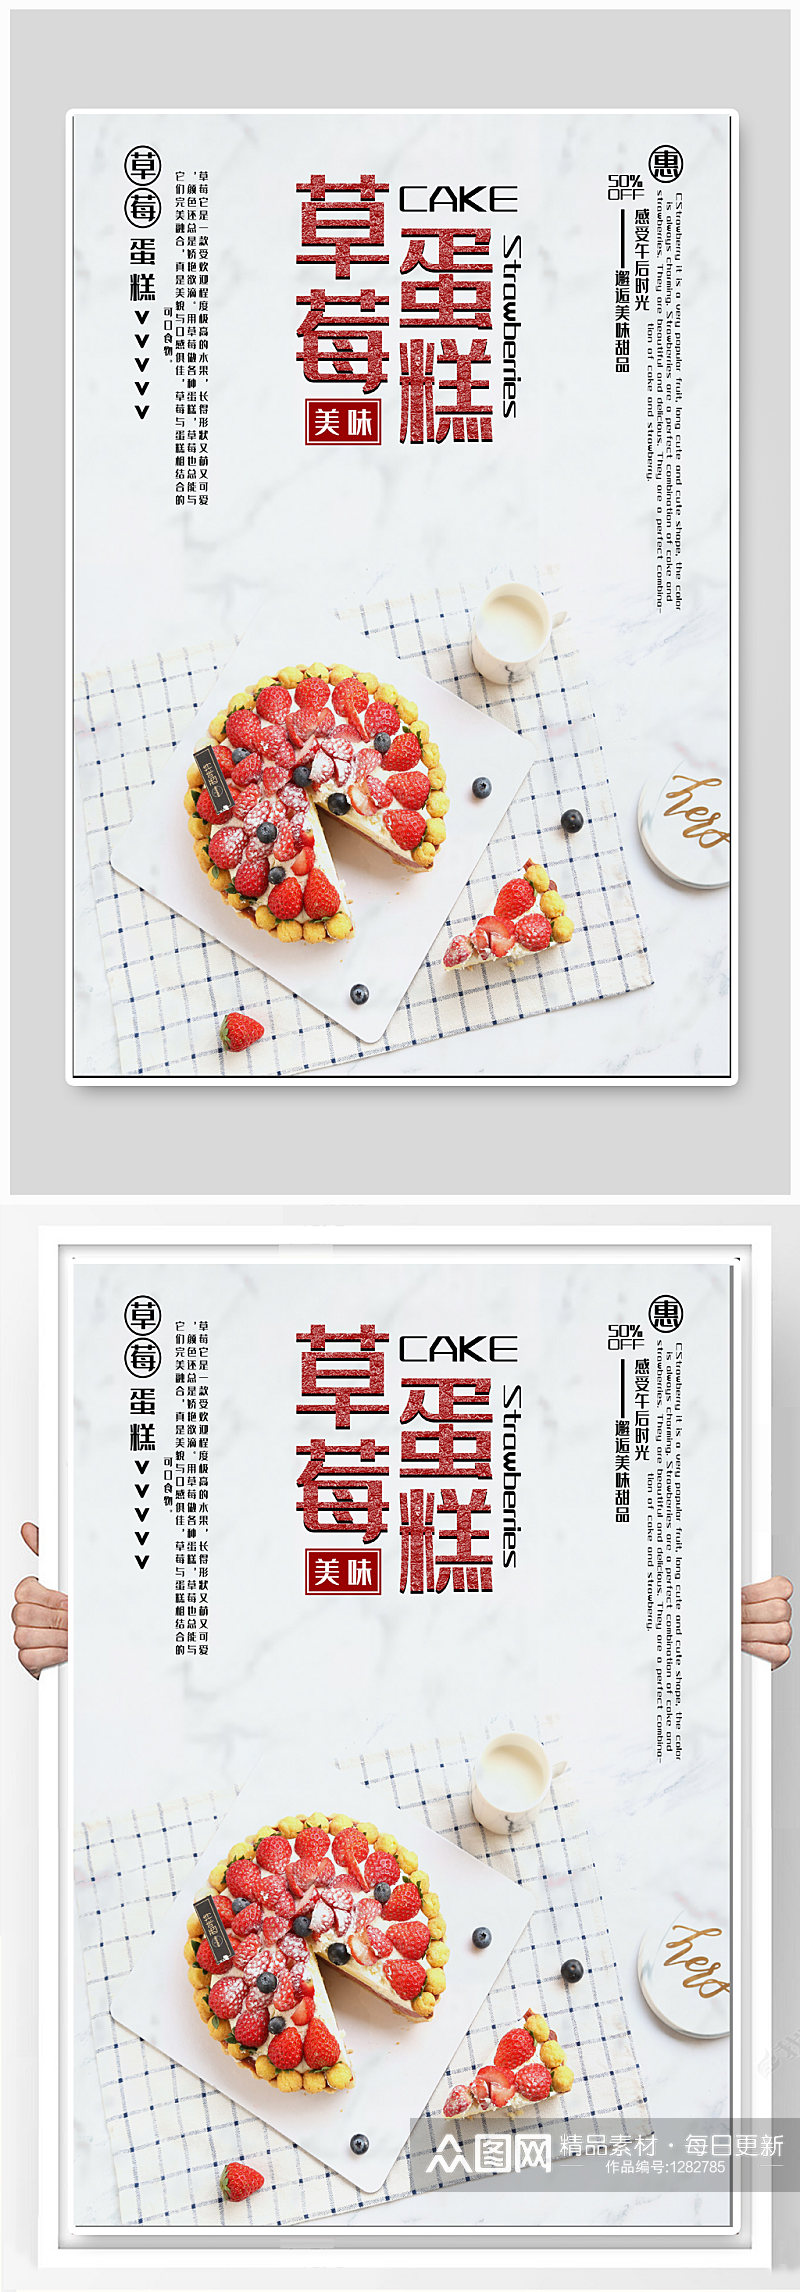 草莓蛋糕美食海报素材